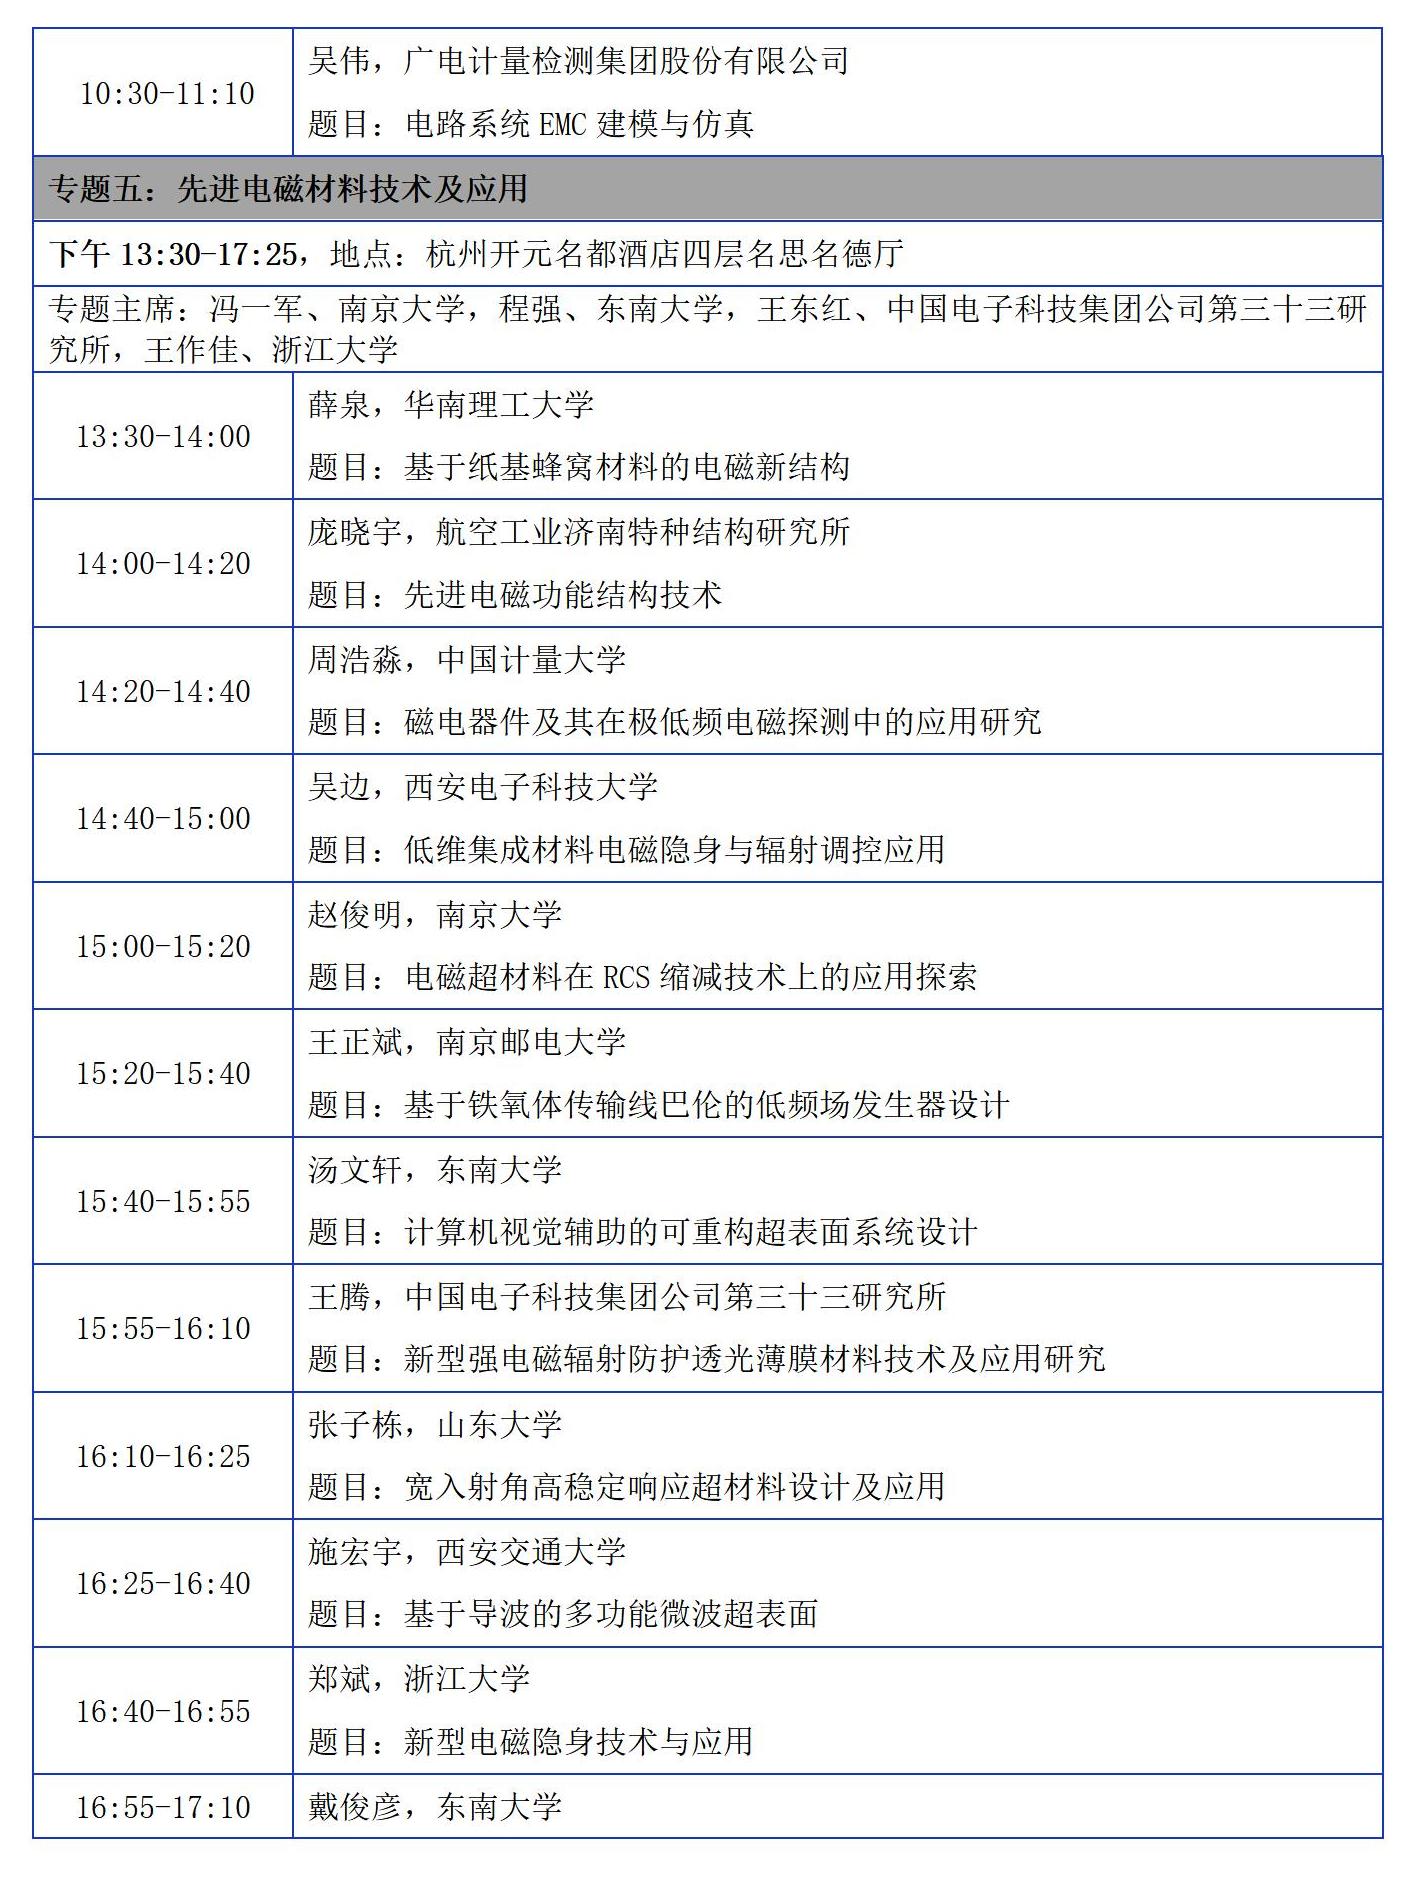 【日程版】2023年中国电磁兼容及电磁环境效应技术及产业创新大会会议征文通知0921_19(1)